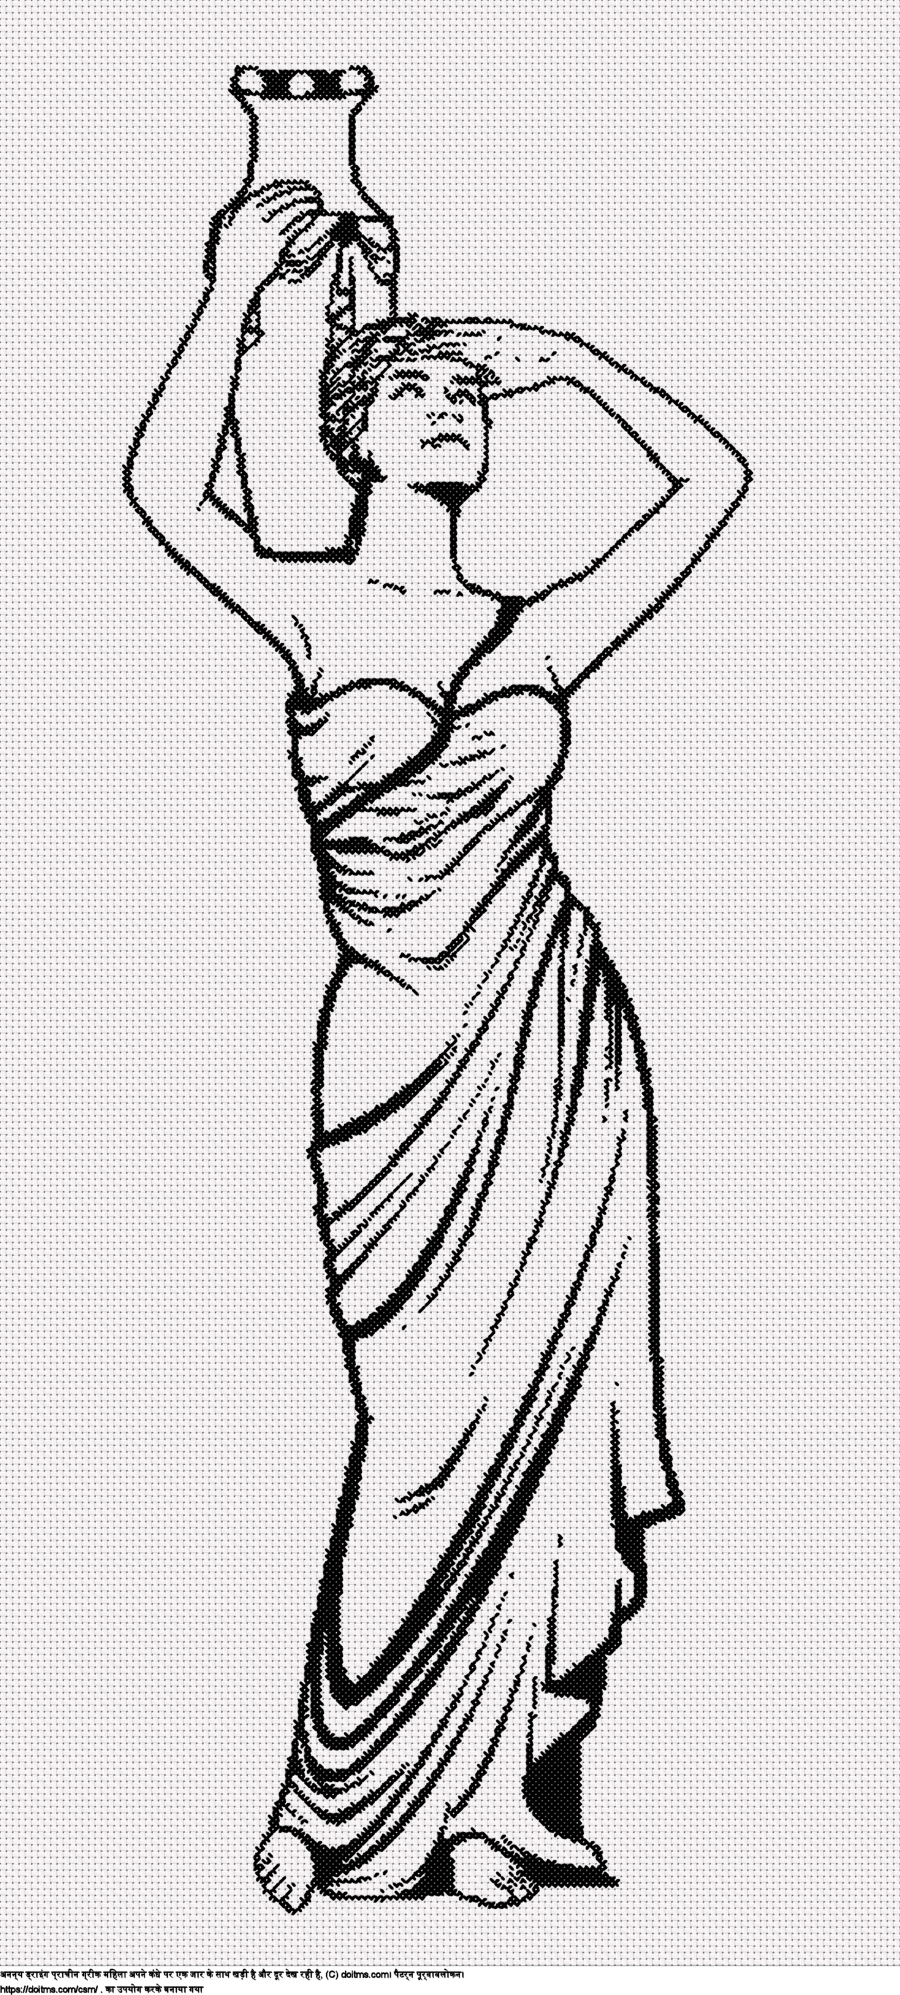 जार के साथ प्राचीन यूनानी महिला